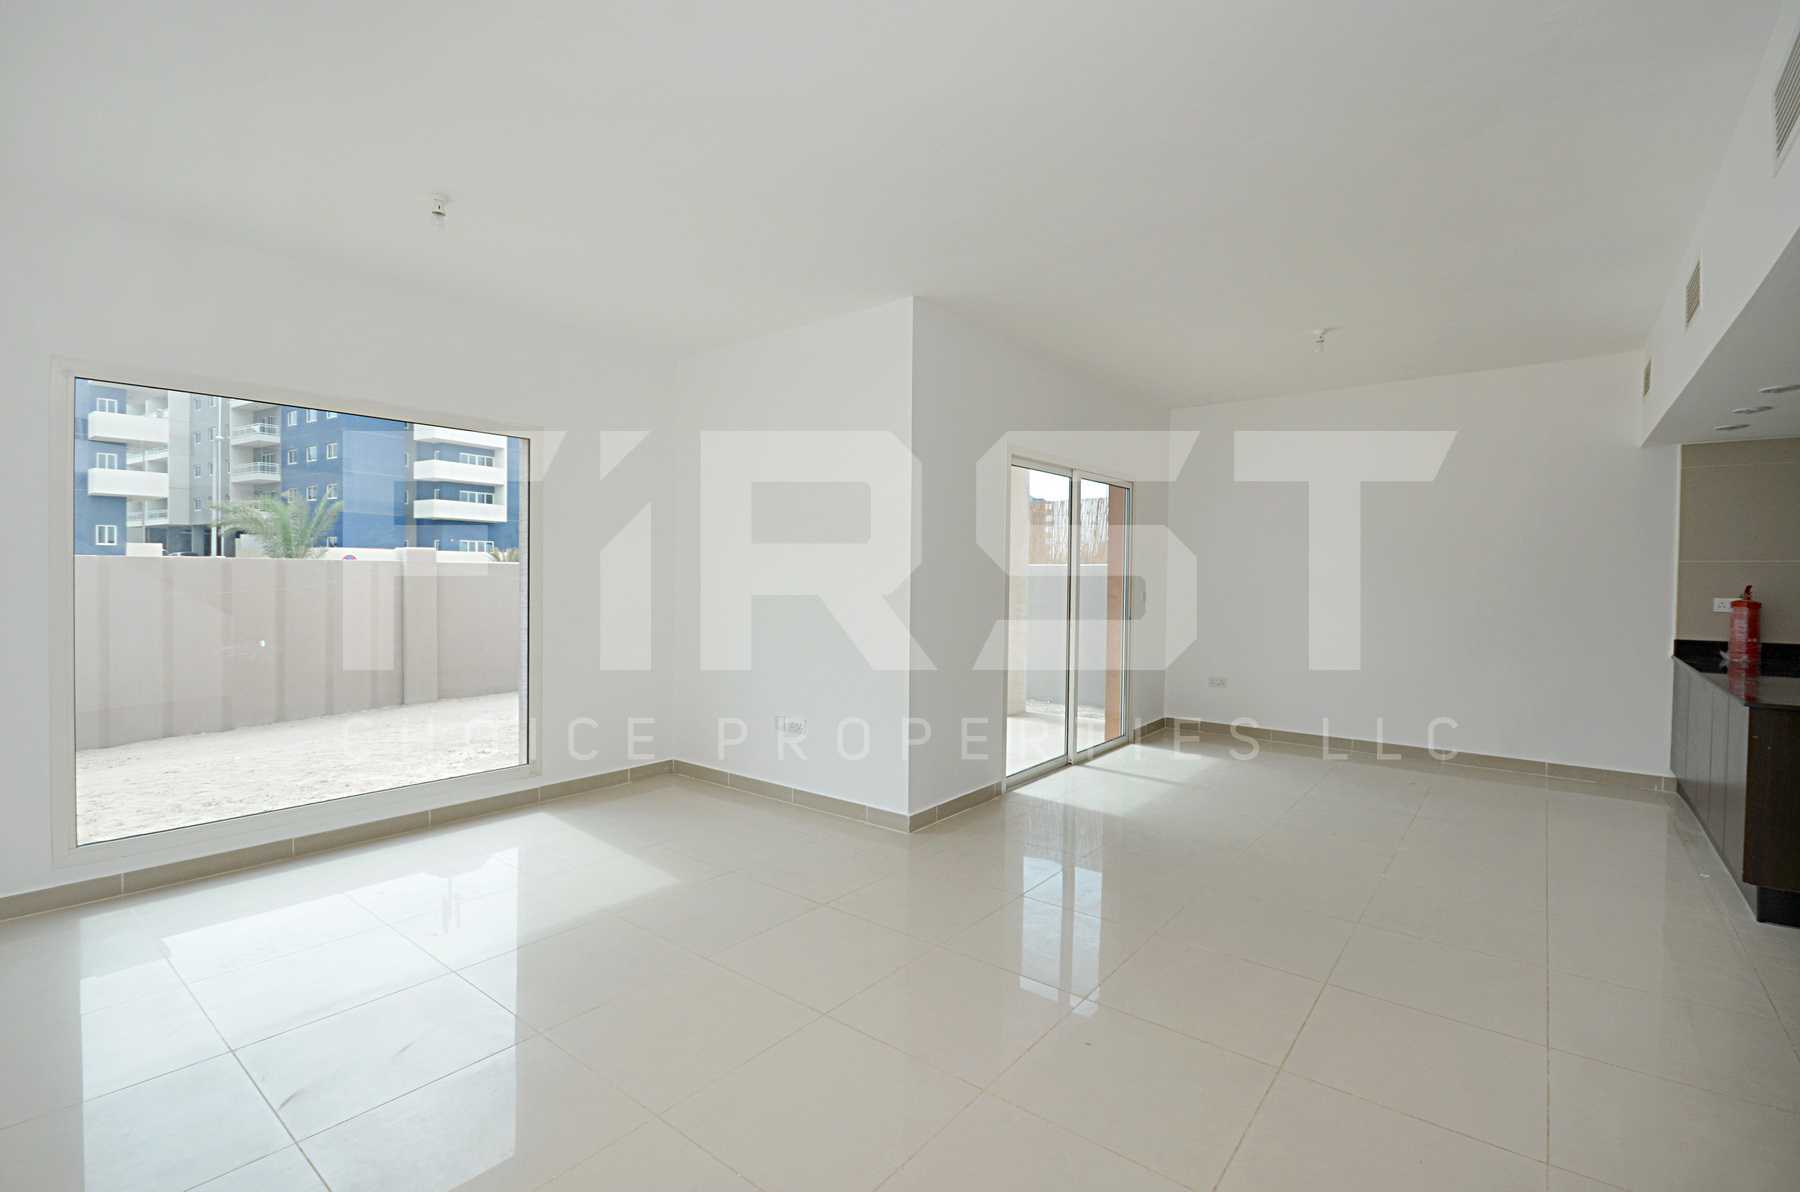 Internal Photo of 4 Bedroom Villa in Al Reef Villas Al Reef Abu Dhabi UAE  2858 sq (43).jpg